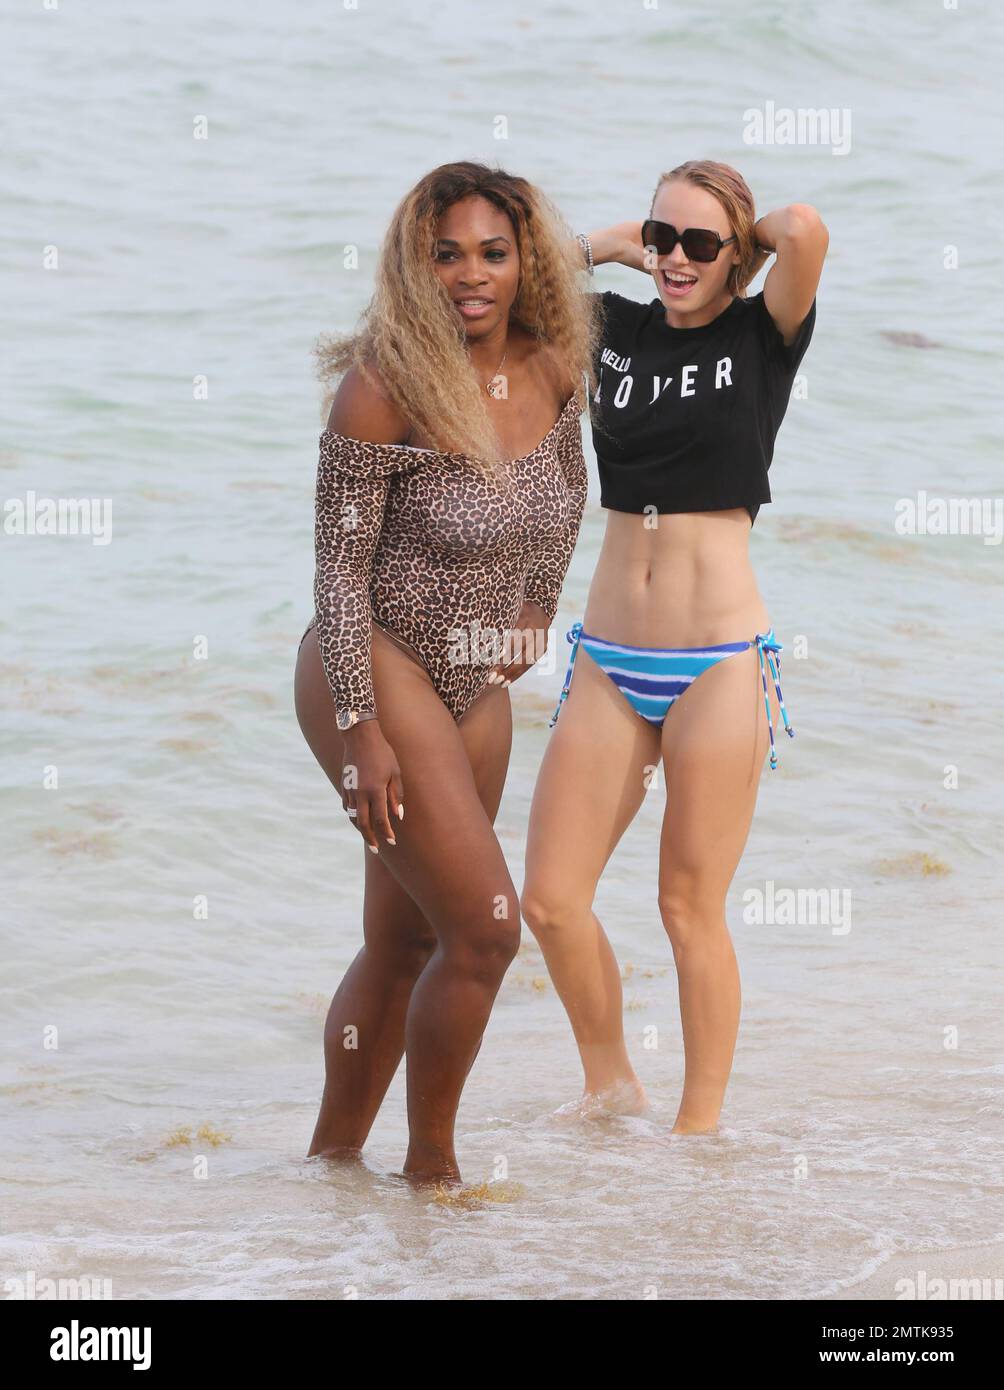 Las tenistas Serena Williams y Caroline Wozniacki se ven en Miami Beach  disfrutando del día con amigos. Serena se ve con un traje de baño unitard  de estampado animal, mientras que Caroline